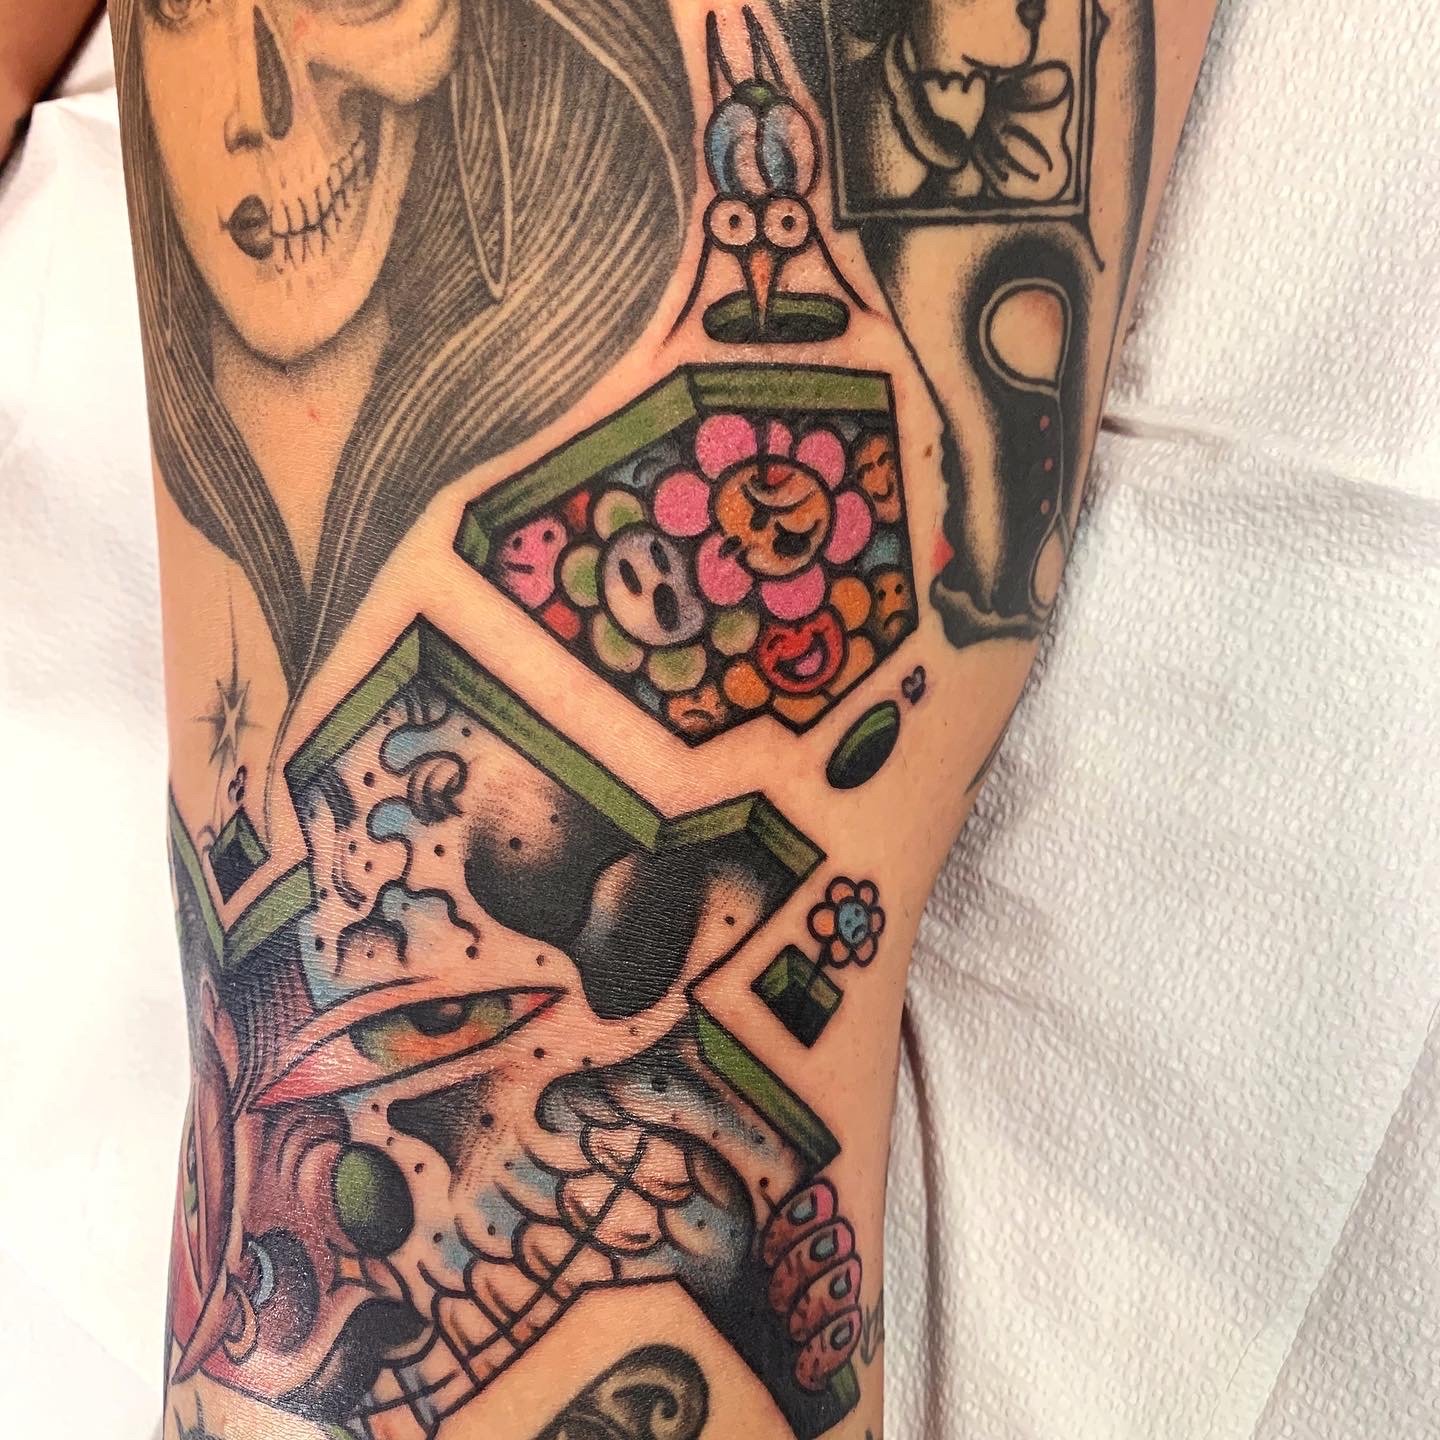 Josh Adams — Rock of Ages Tattooing Austin, TX